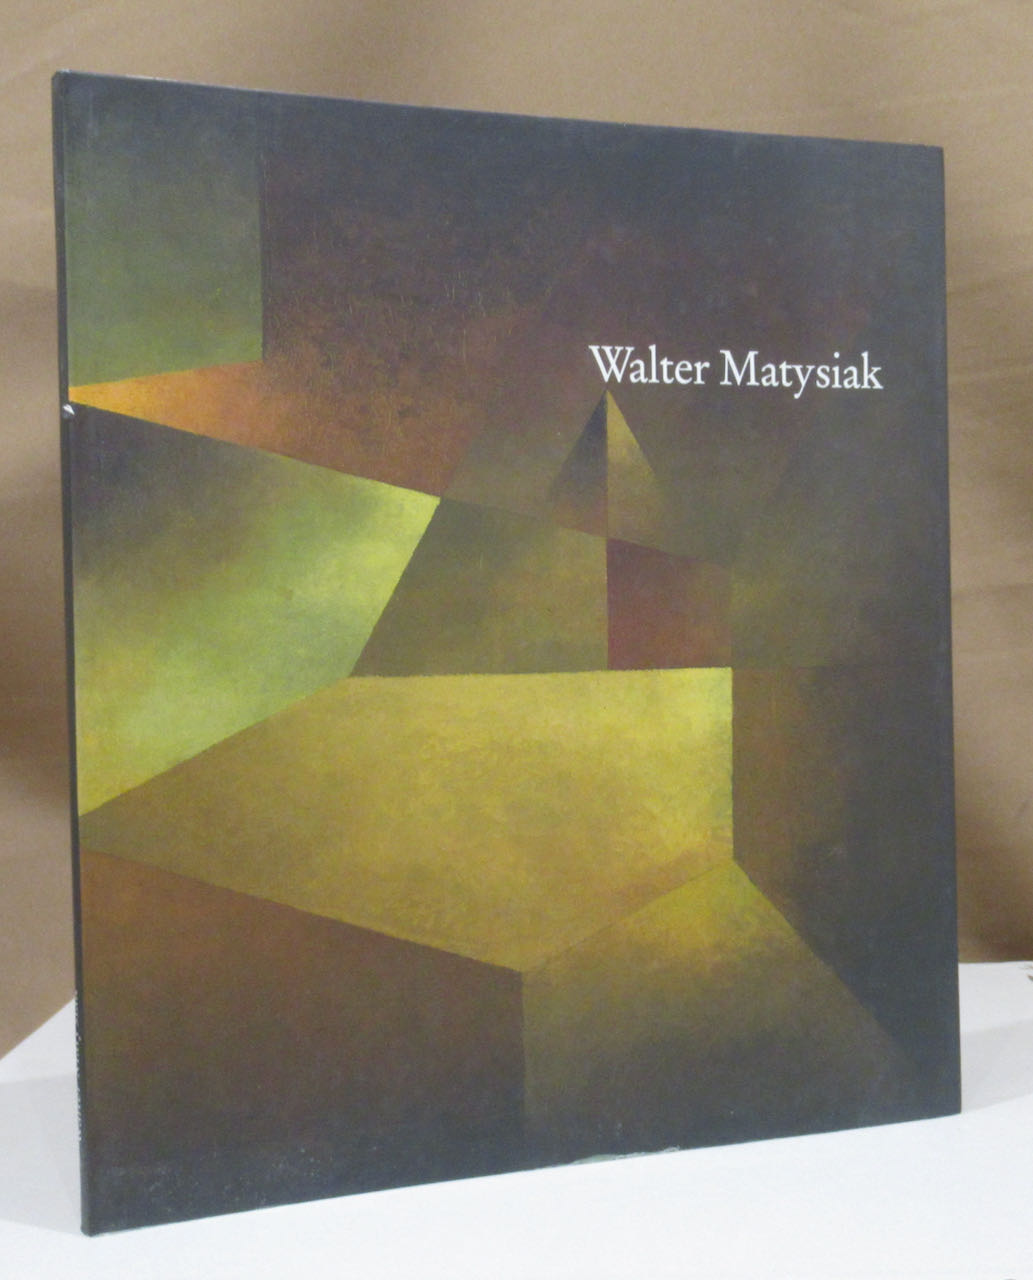 Walter Matysiak (1915 - 1985). Anläßlich der Gedächtnisausstellung vom 23. März bis 27. April 1986 herausgegeben vom Kunstverein Konstanz. - Matysiak, Walter.